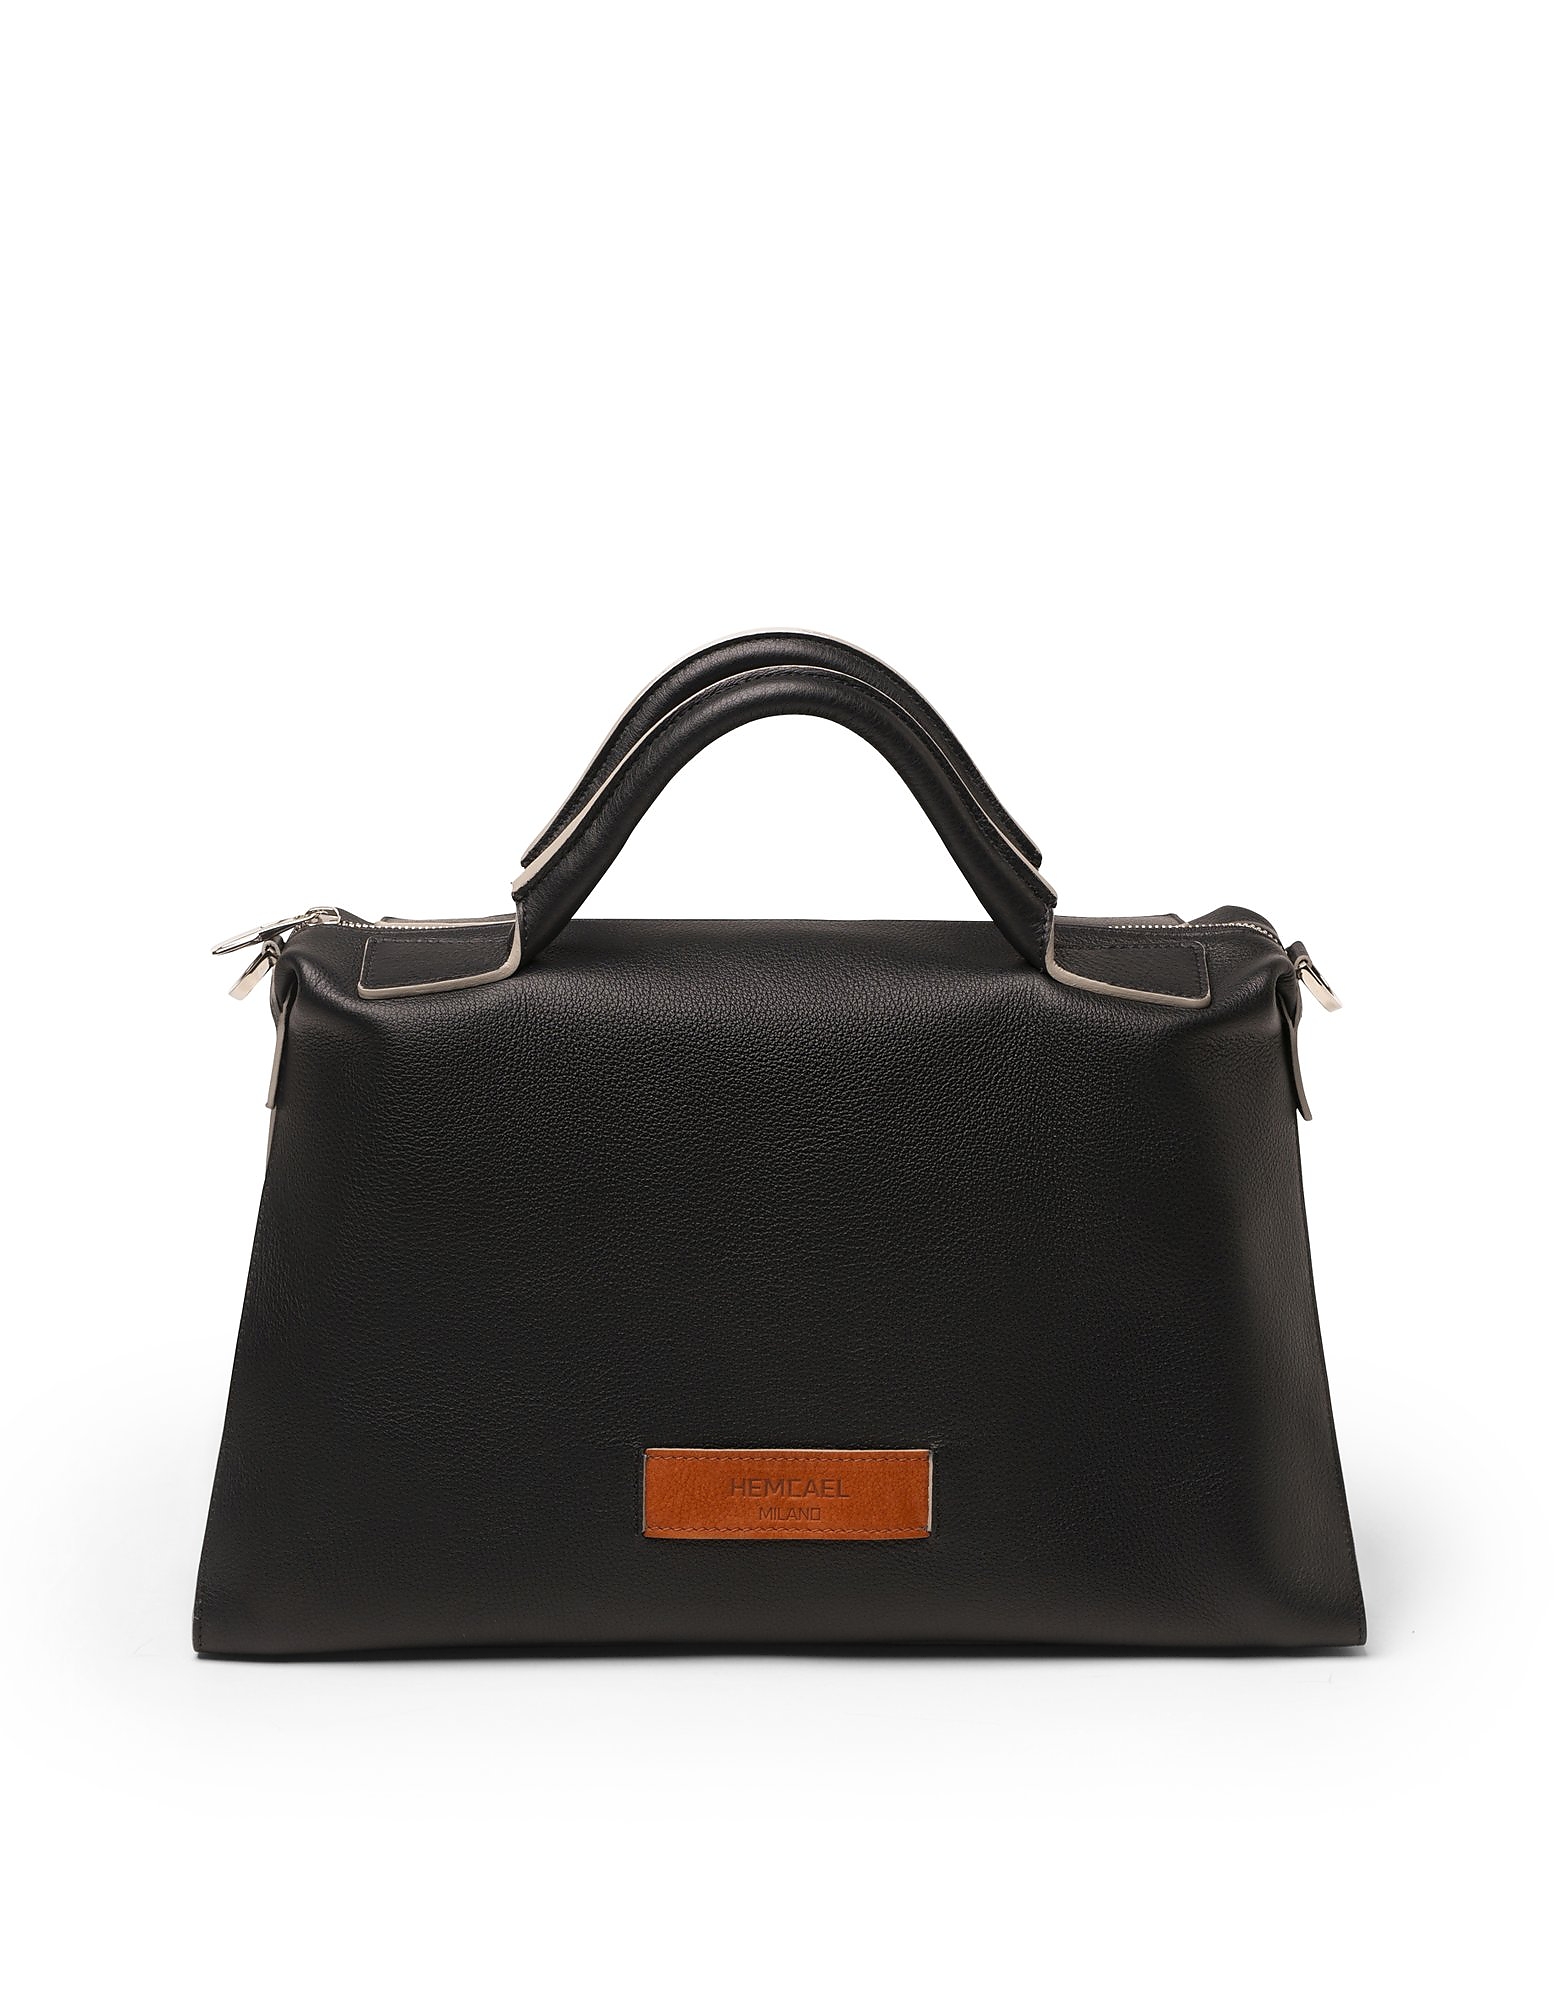 Hemcael Designer Handbags Dora Leather Top Handle Bag In Noir